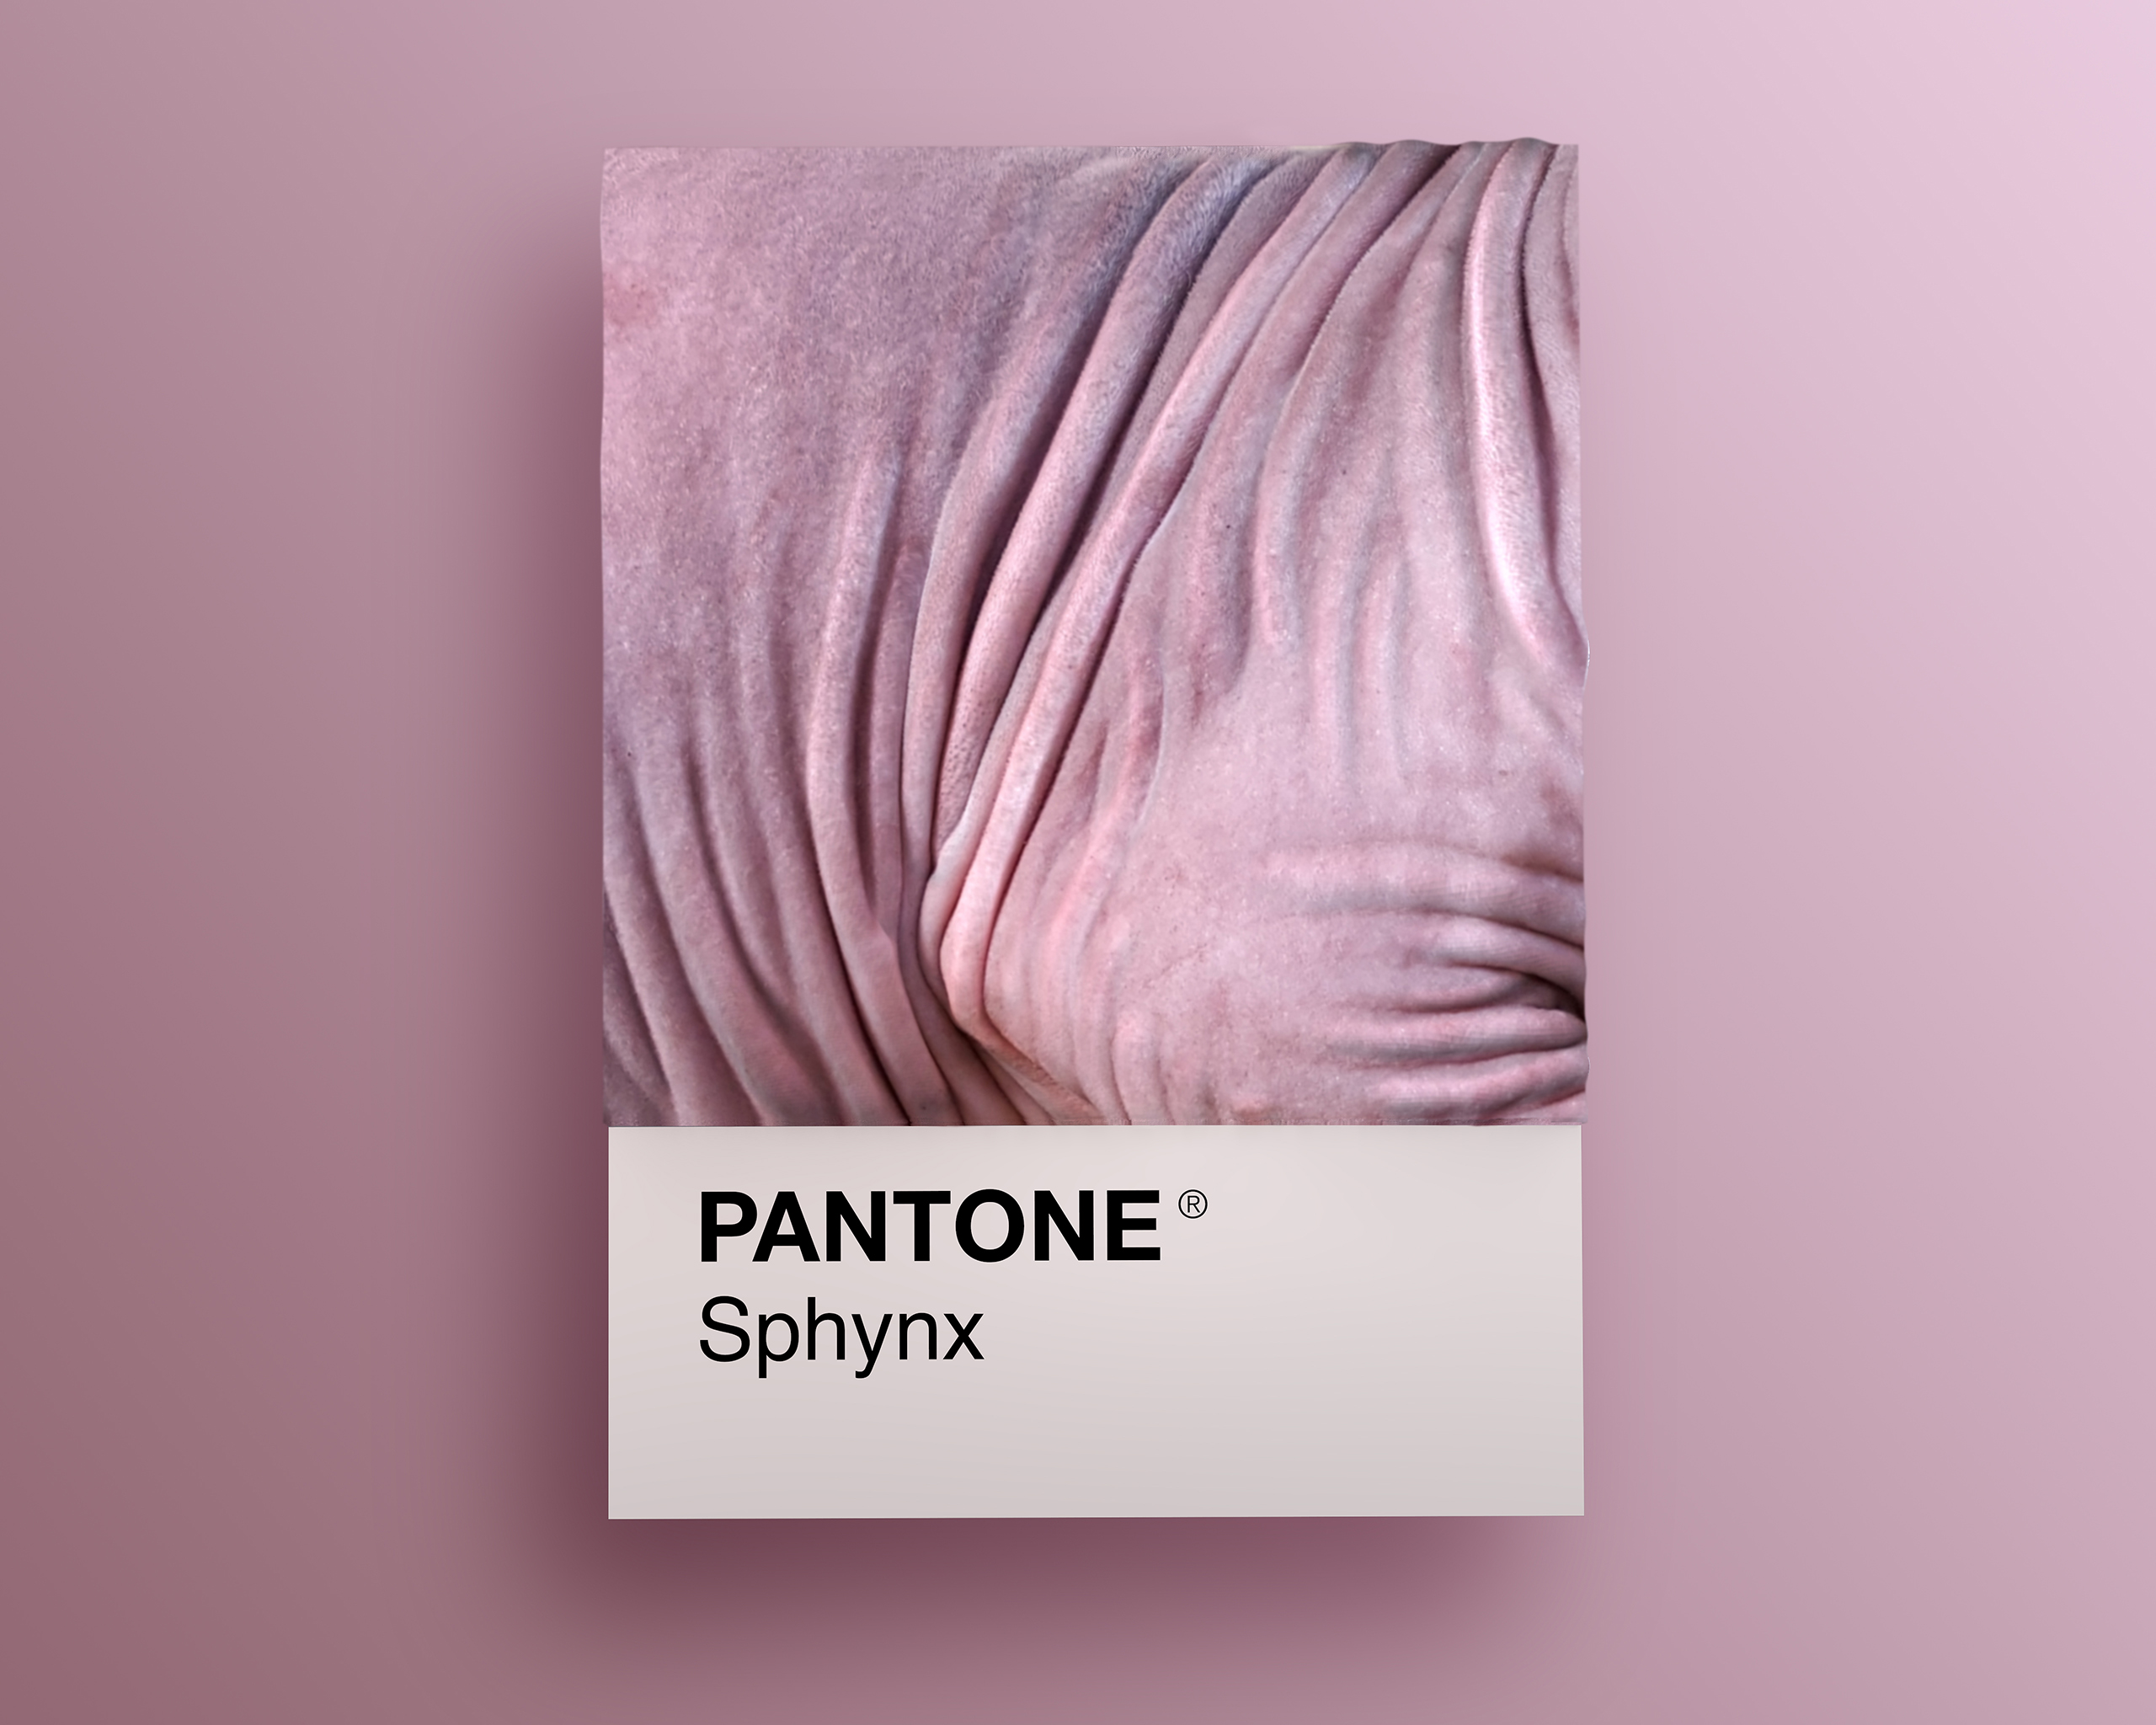 Sphynx as Pantone